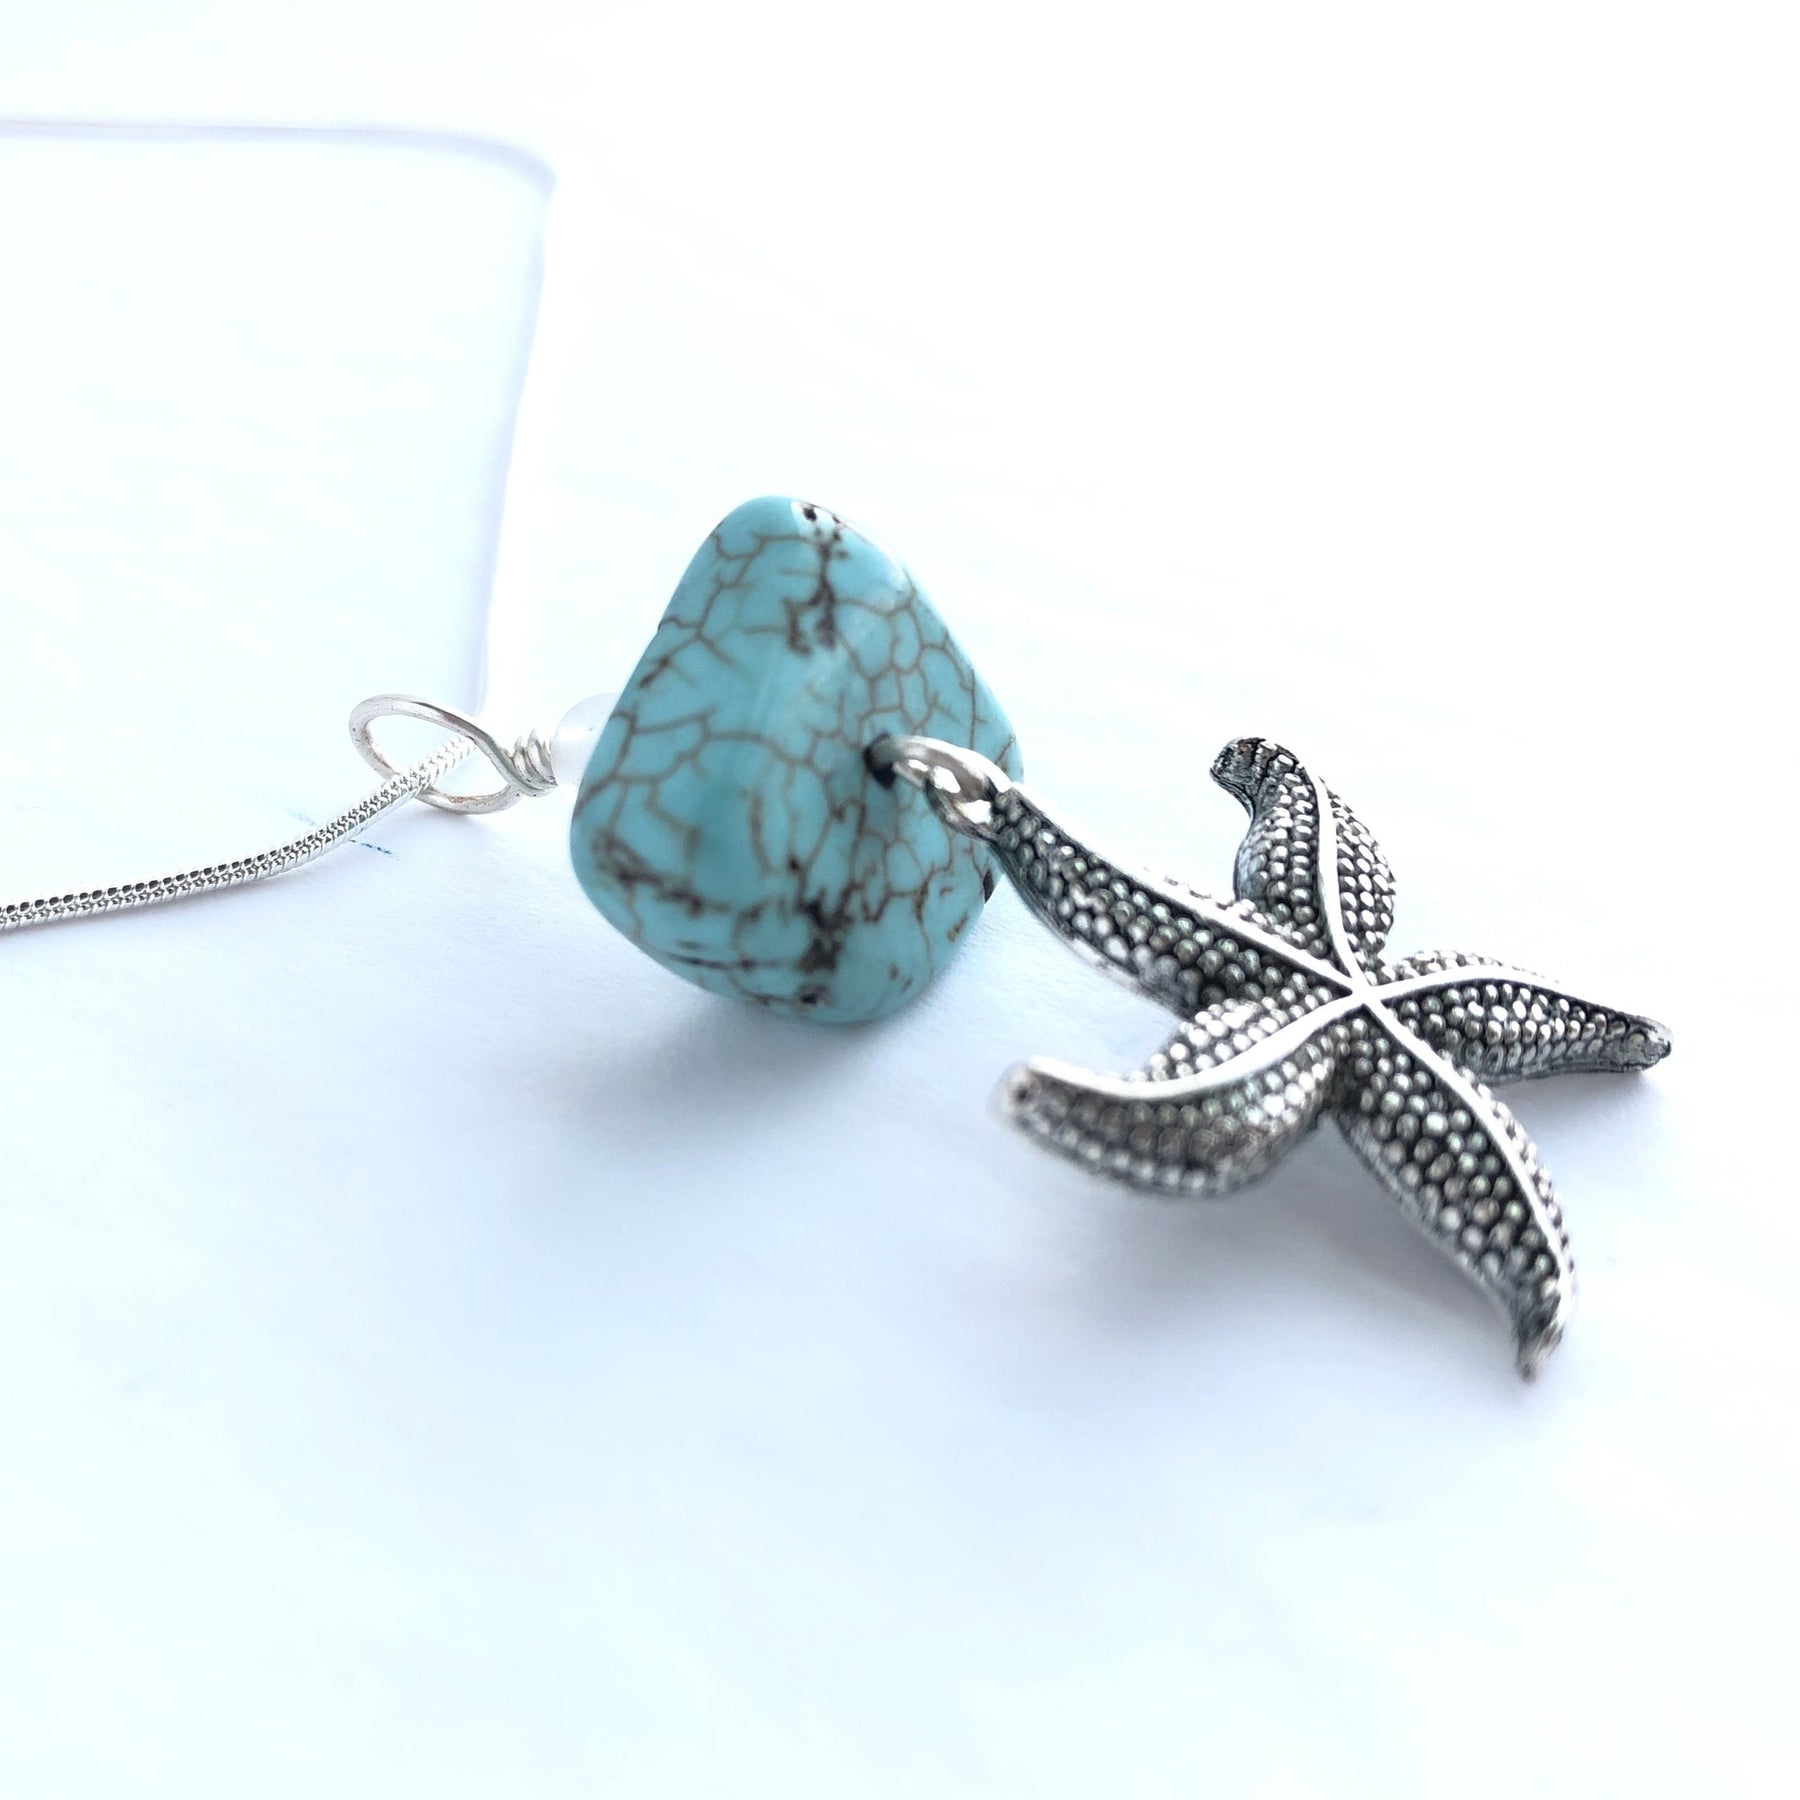 Ocean Star Necklace